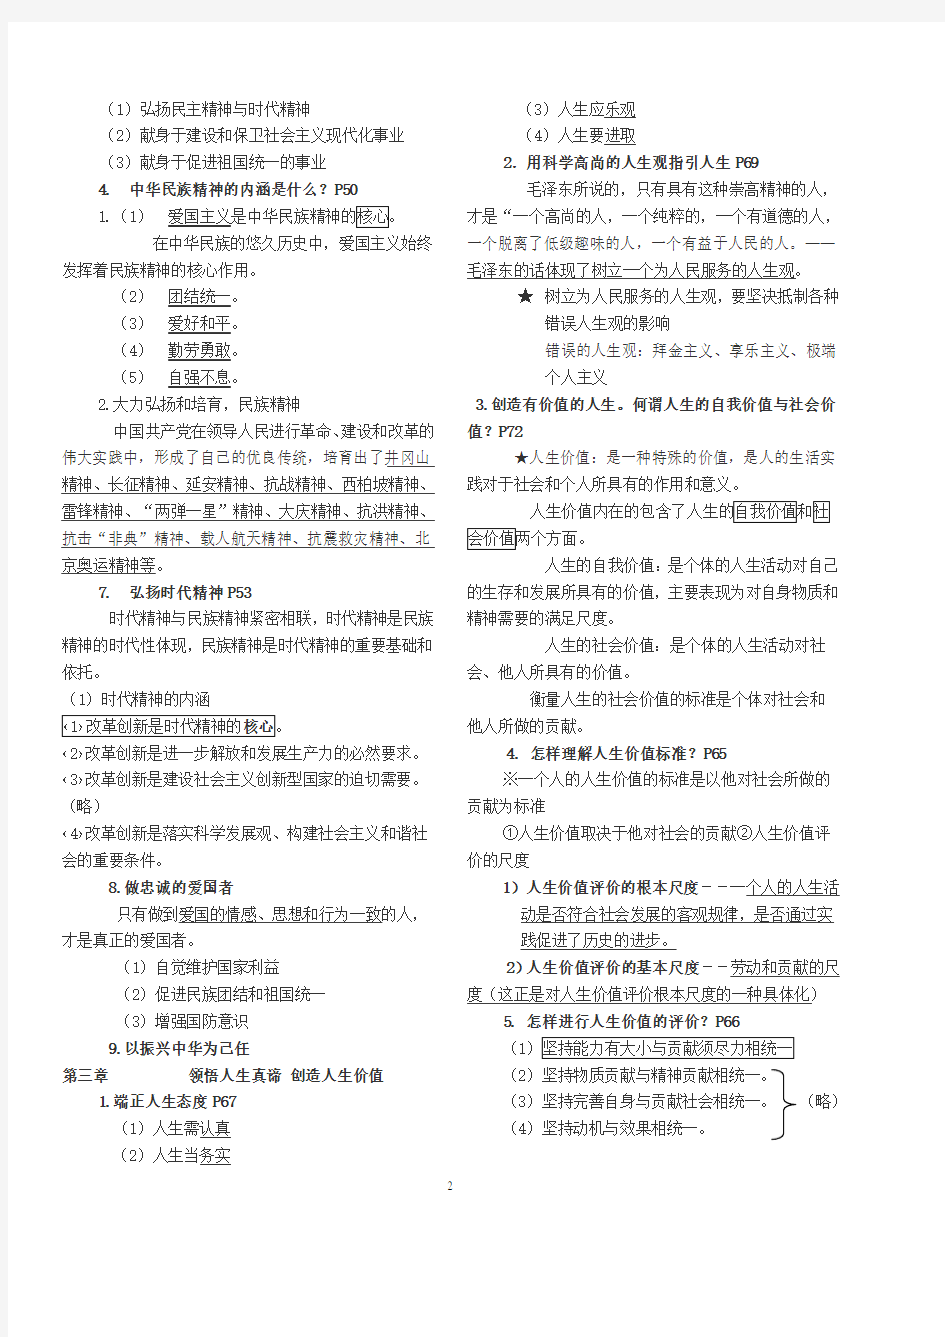 思修与法律基础复习提纲(2020年整理).pdf